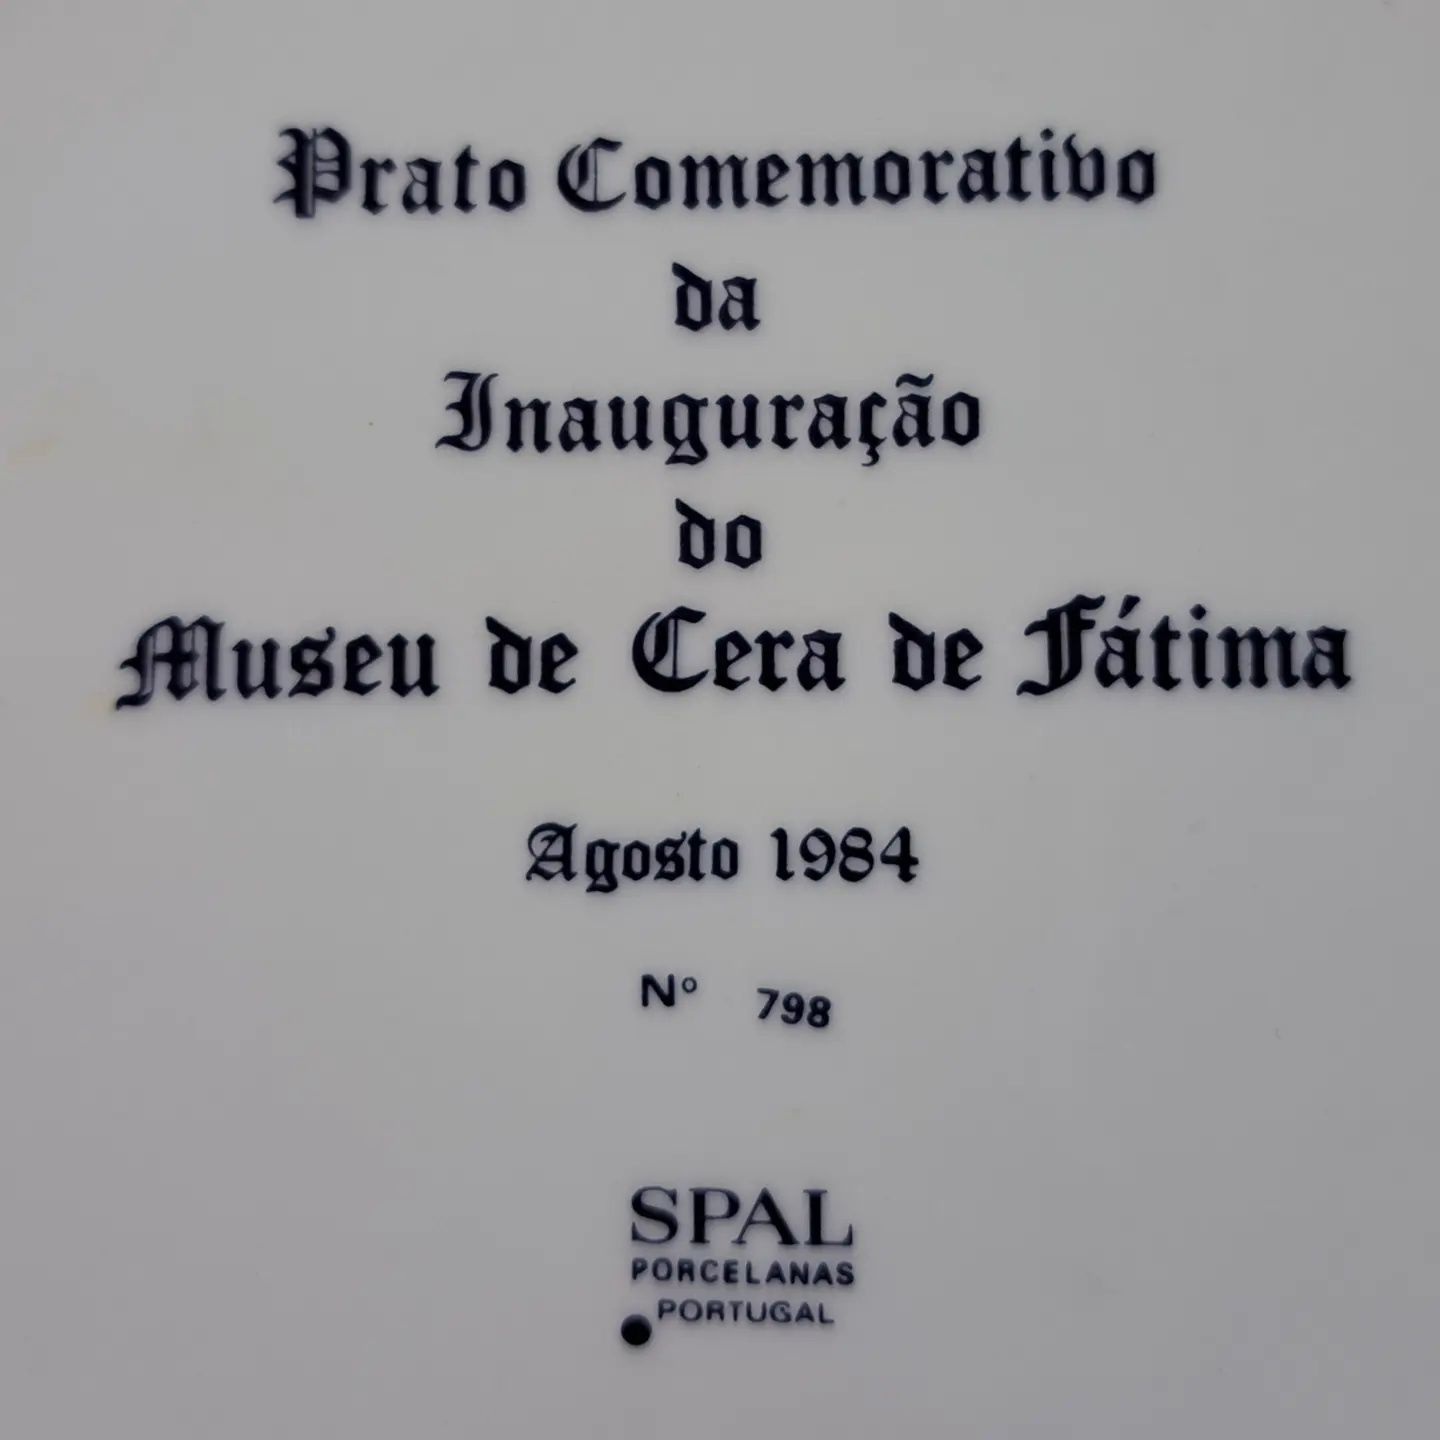 Prato comemorativo da inauguração do Museu de Cera de Fátima

Ag